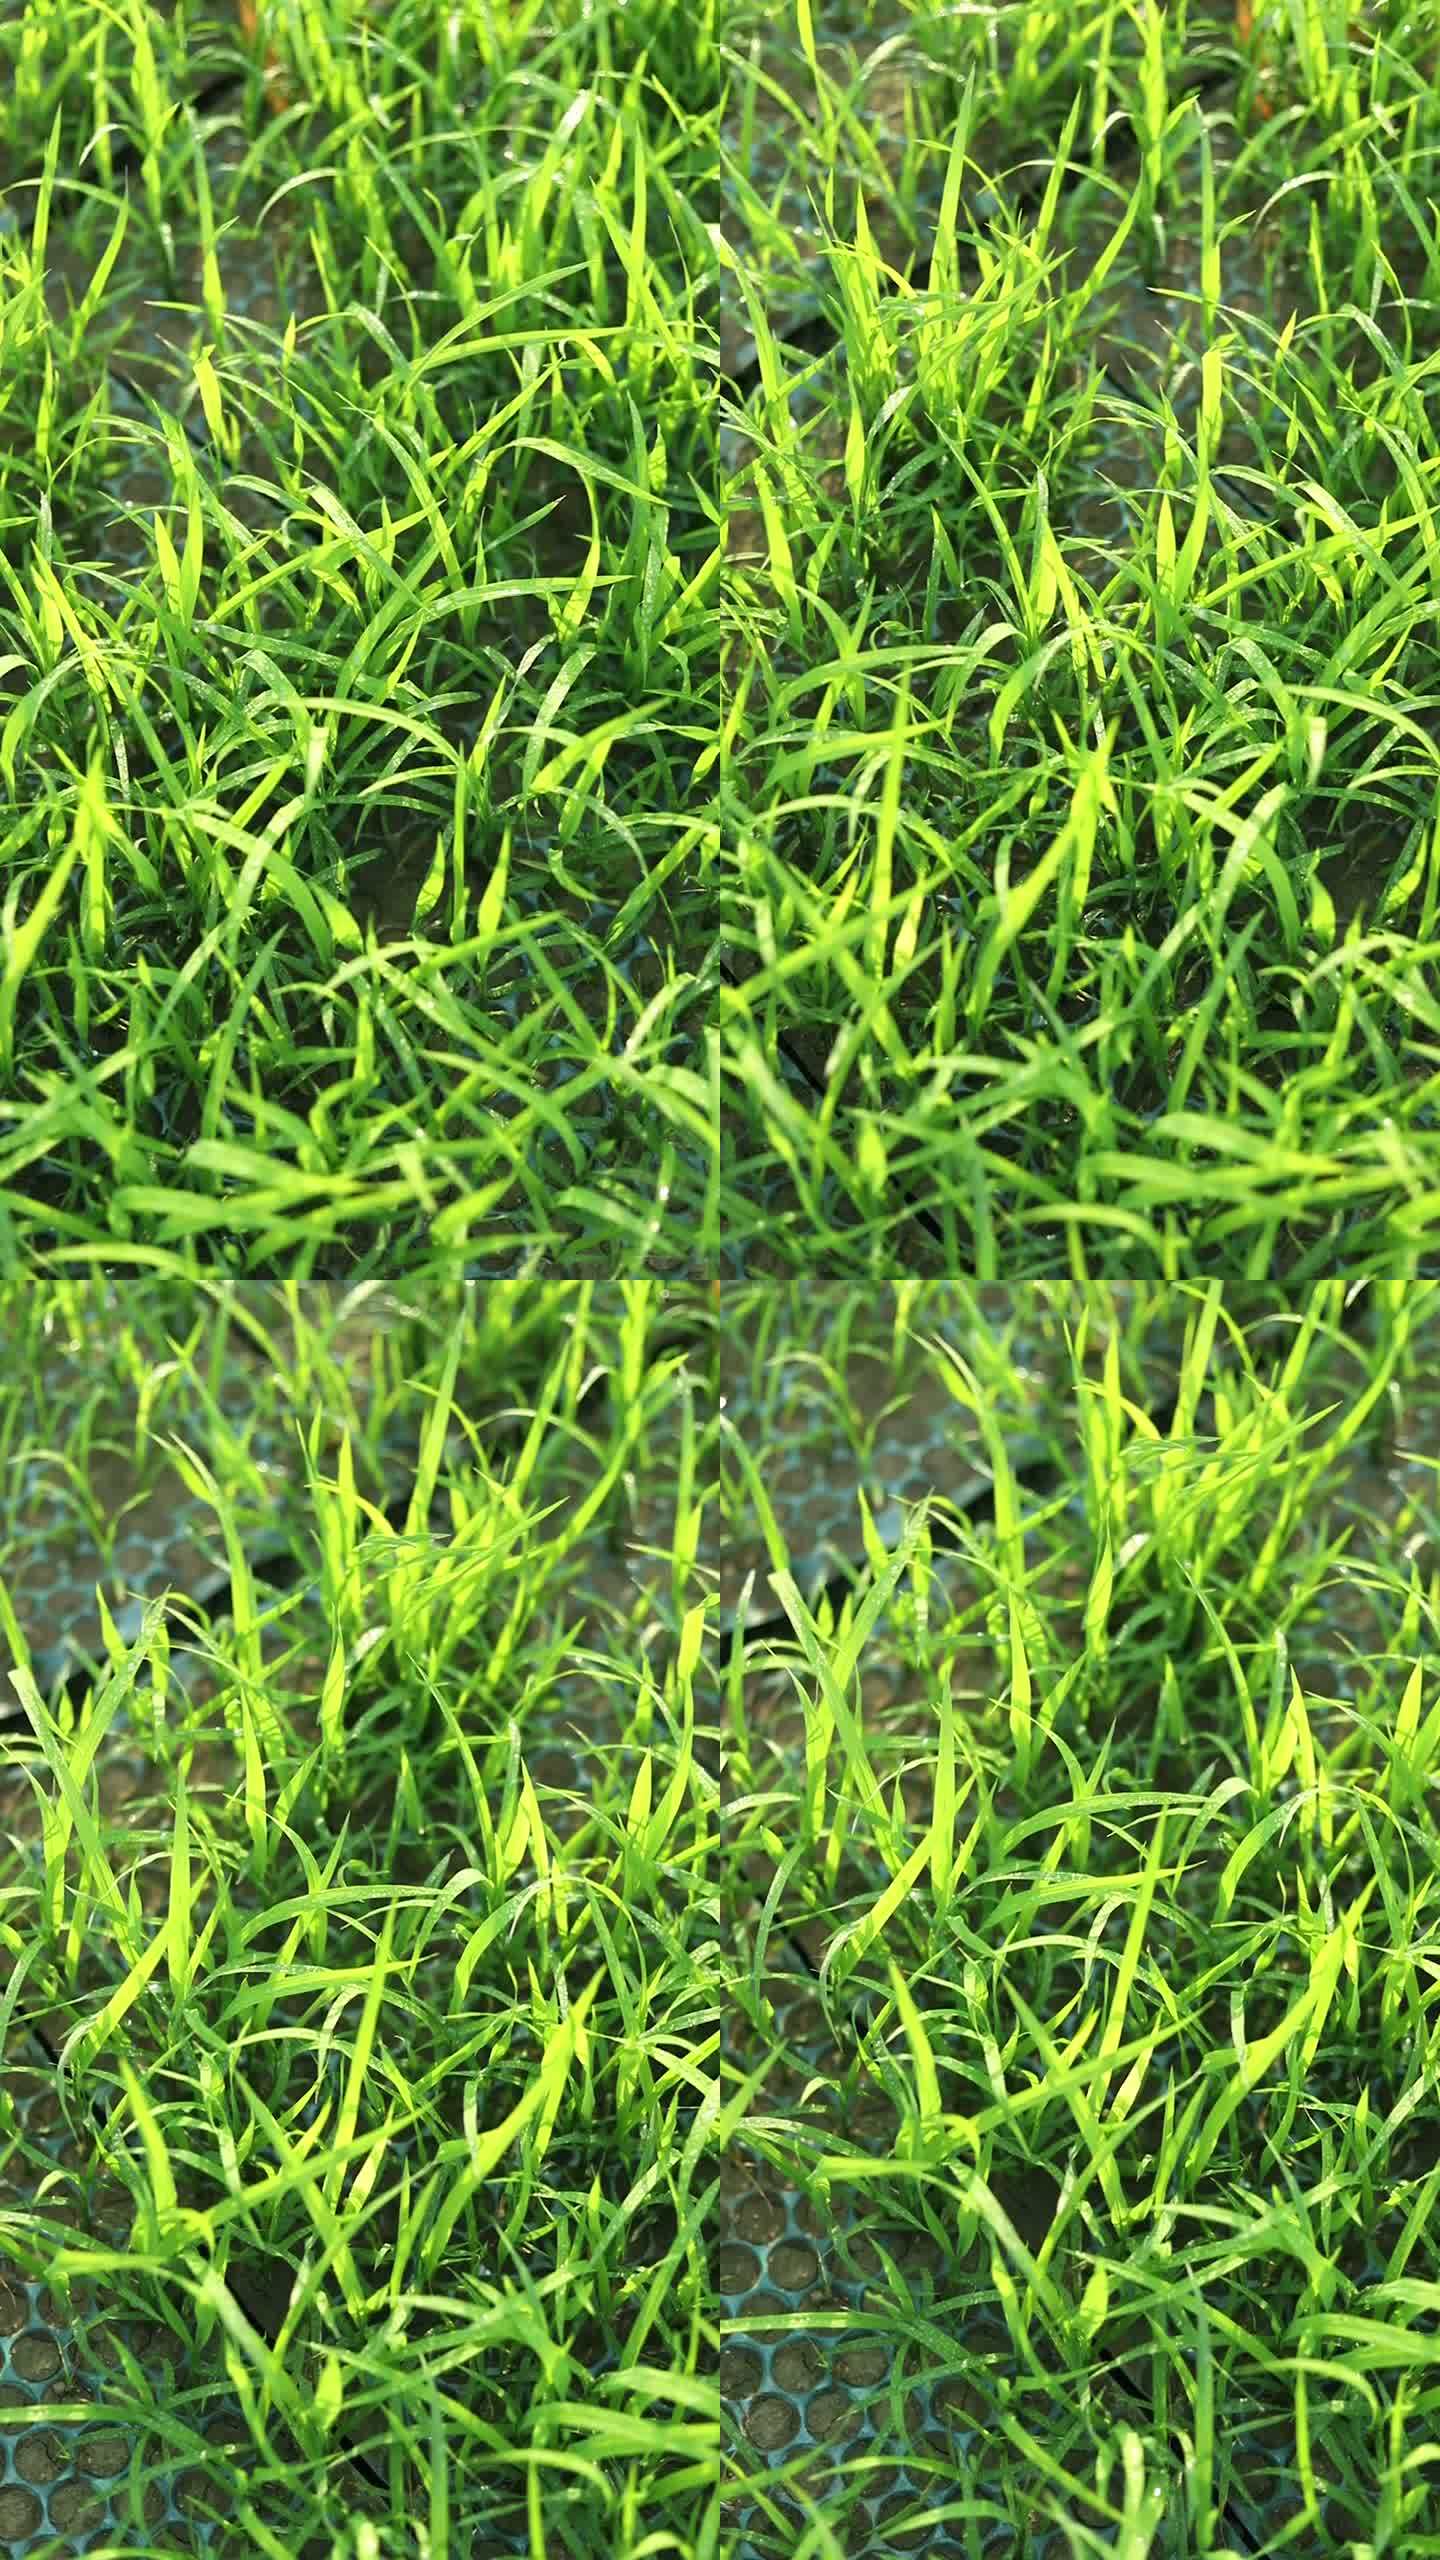 绿色的水稻秧苗